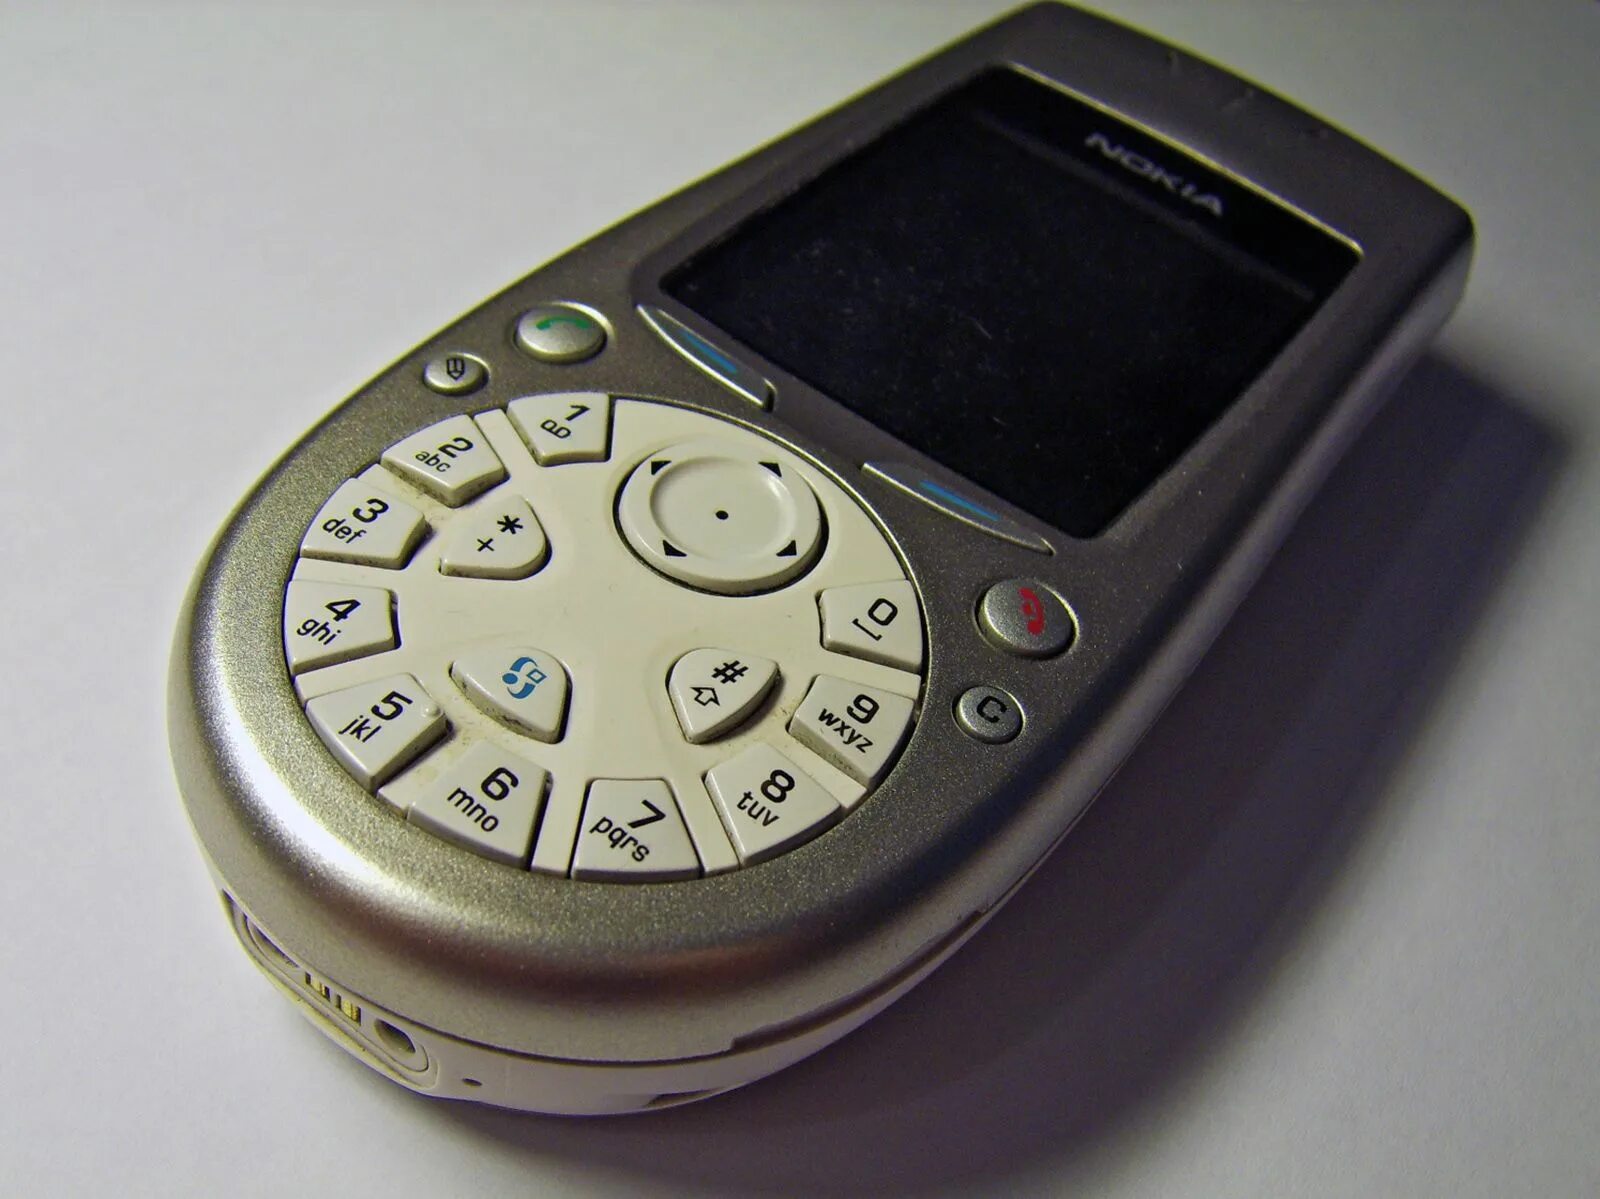 Nokia 3650. Смартфон Nokia 3650. Нокиа с камерой 3650. Смартфон Nokia 7650. Где найти старый телефон